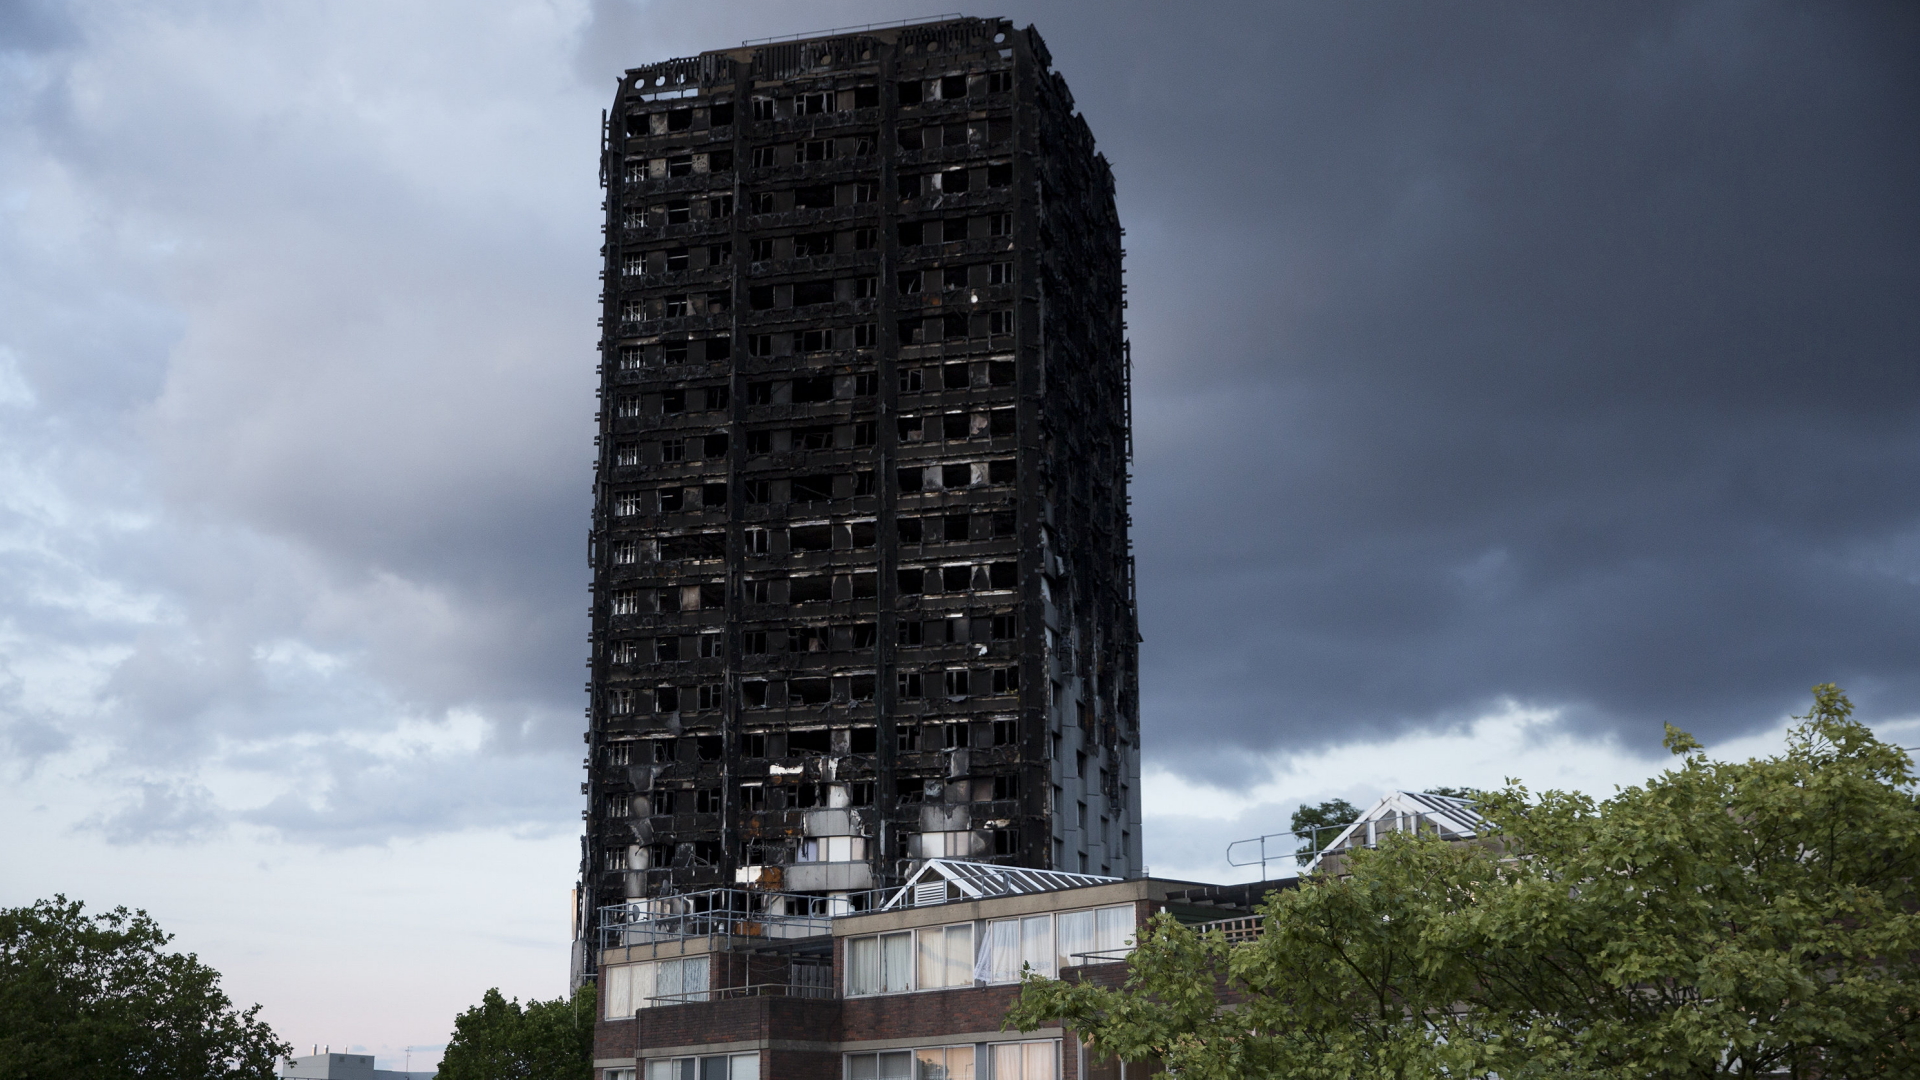 Das ausgebrannte Hochhaus Grenfell Tower in London | dpa